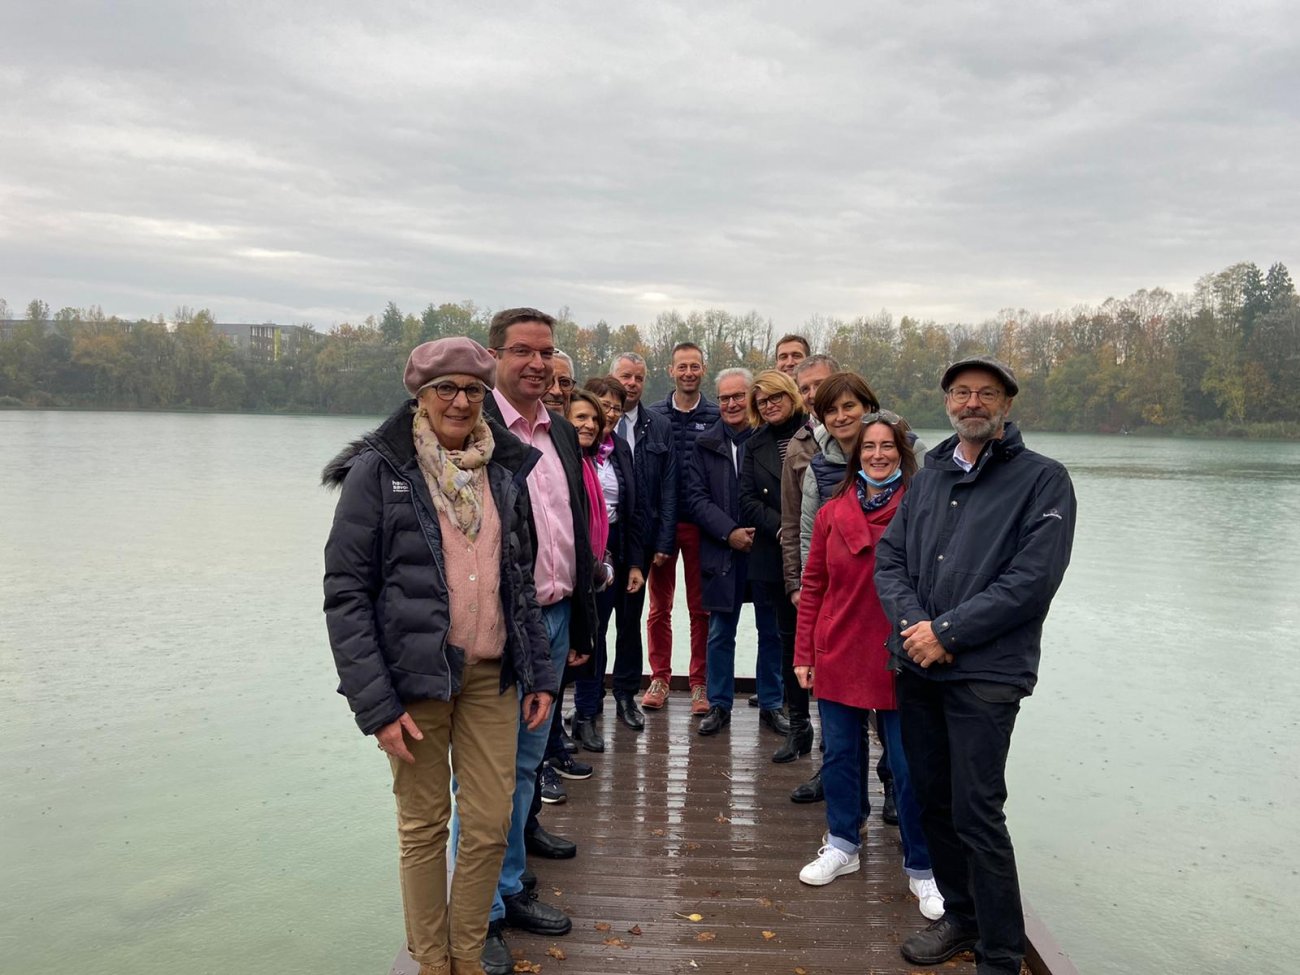 30 octobre 2021 : visites des Conseilles départementaux de Haute-Savoie à la base de loisirs de Rumilly